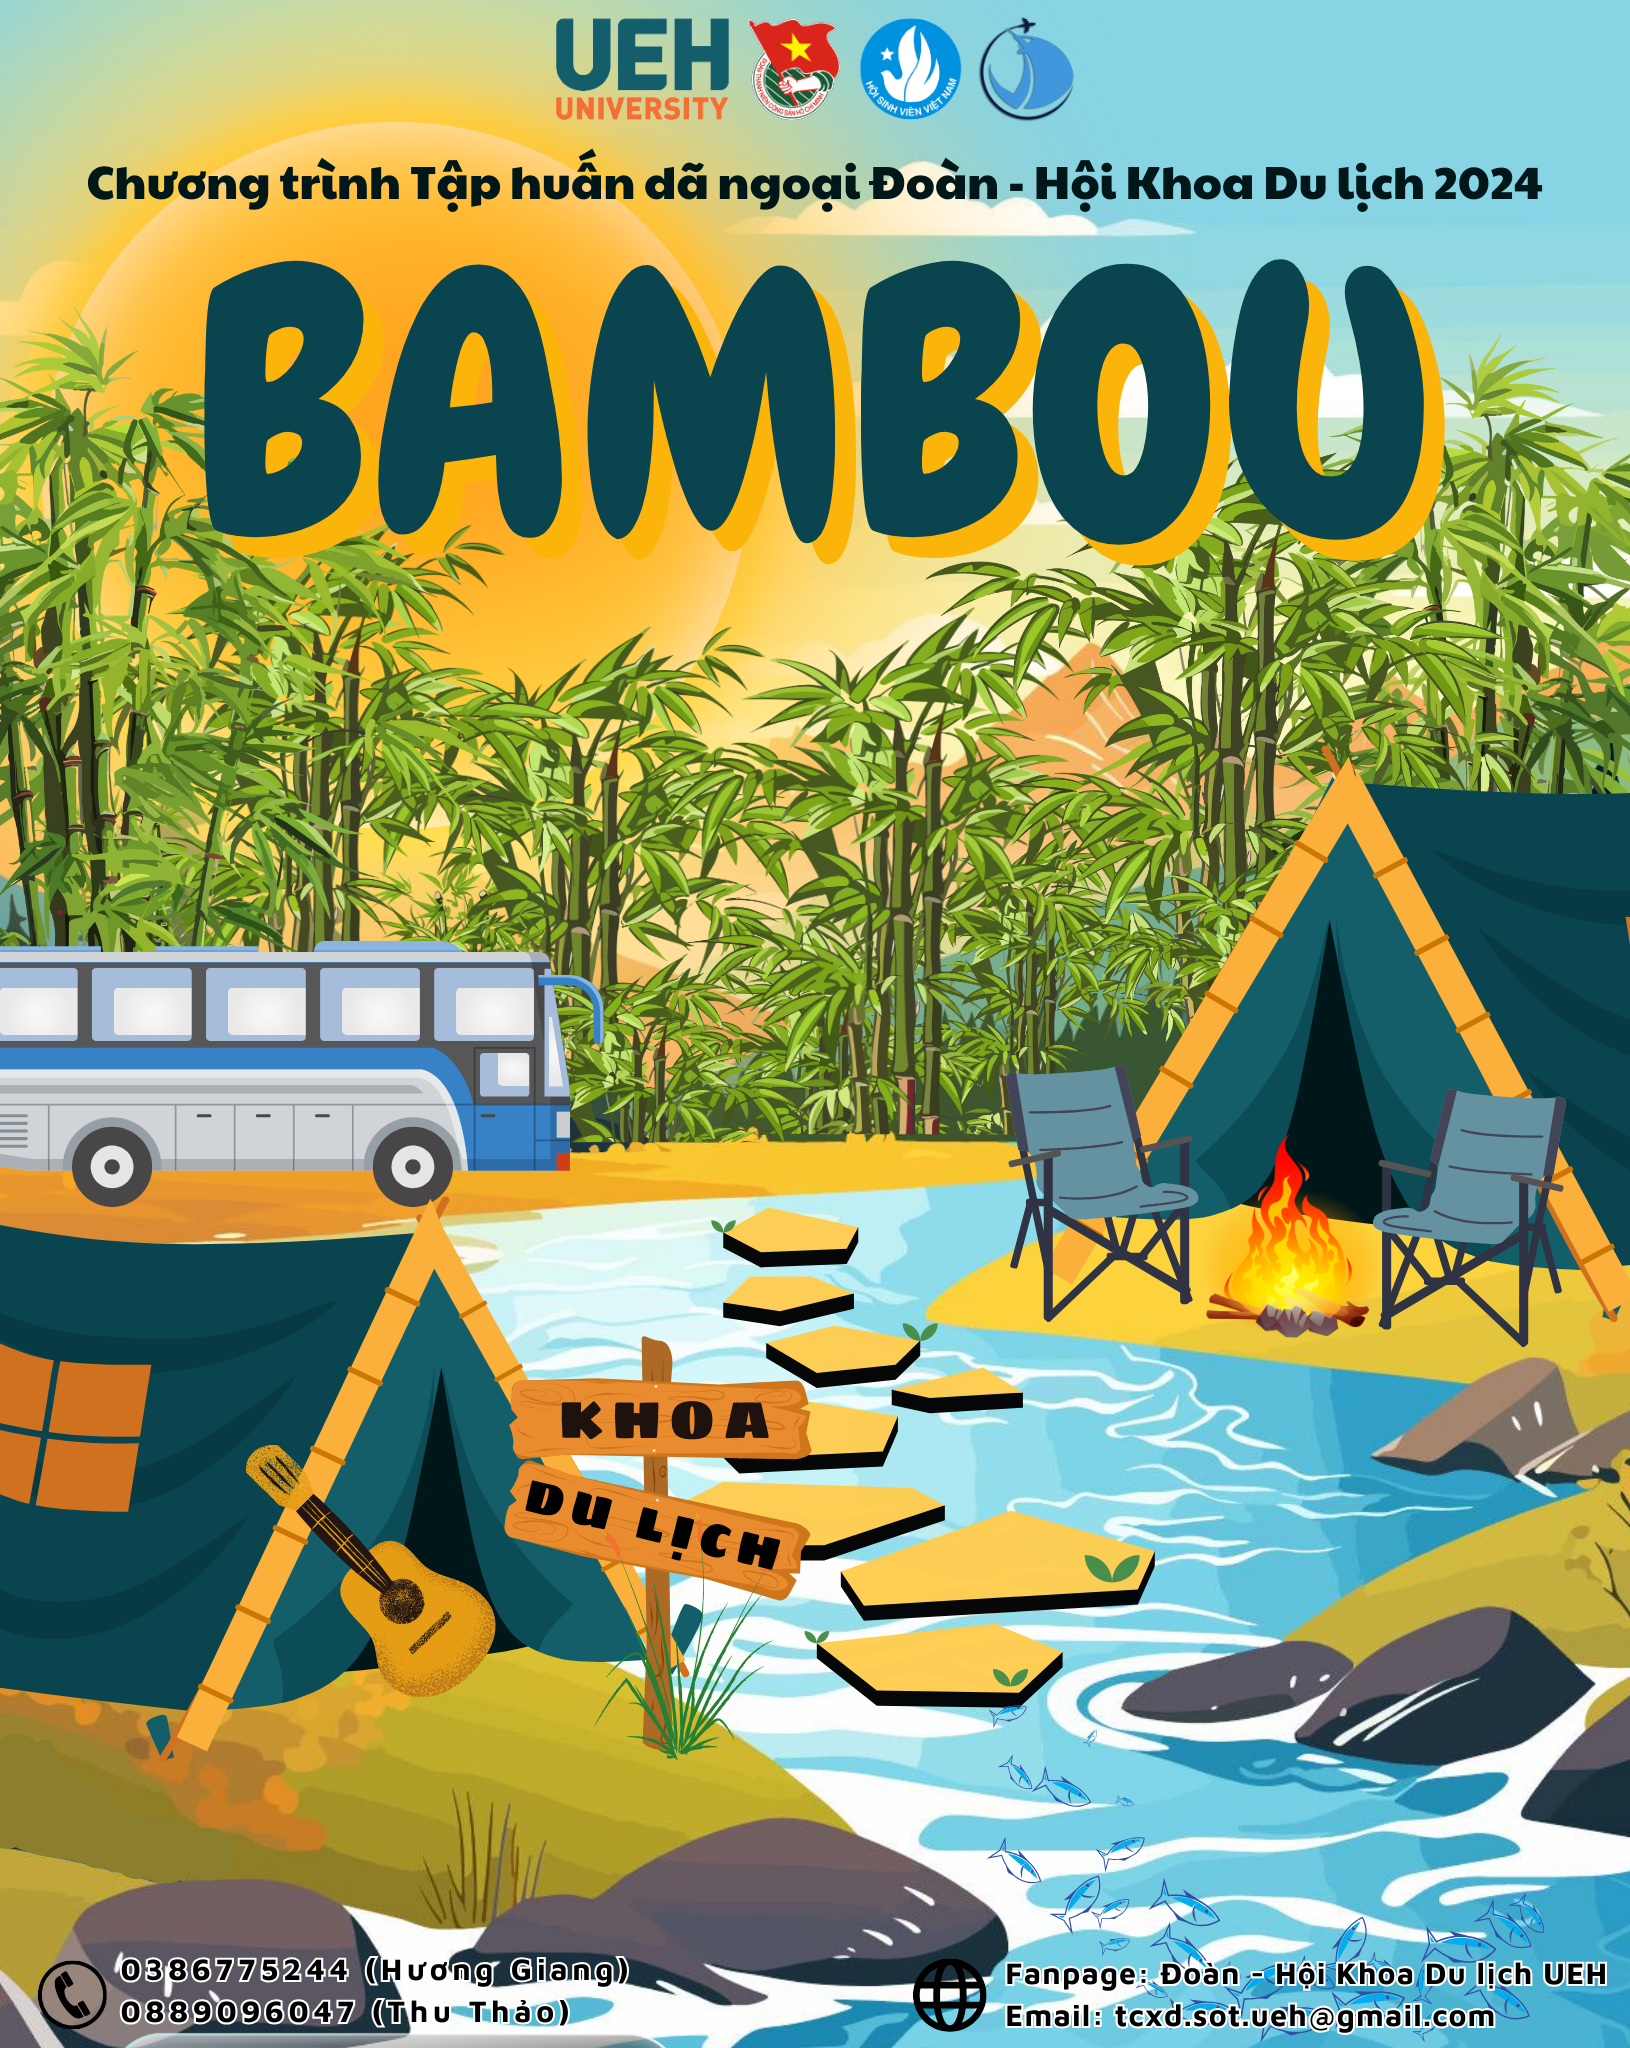 Tập huấn dã ngoại Đoàn - Hội Khoa Du lịch năm 2024: Bambou